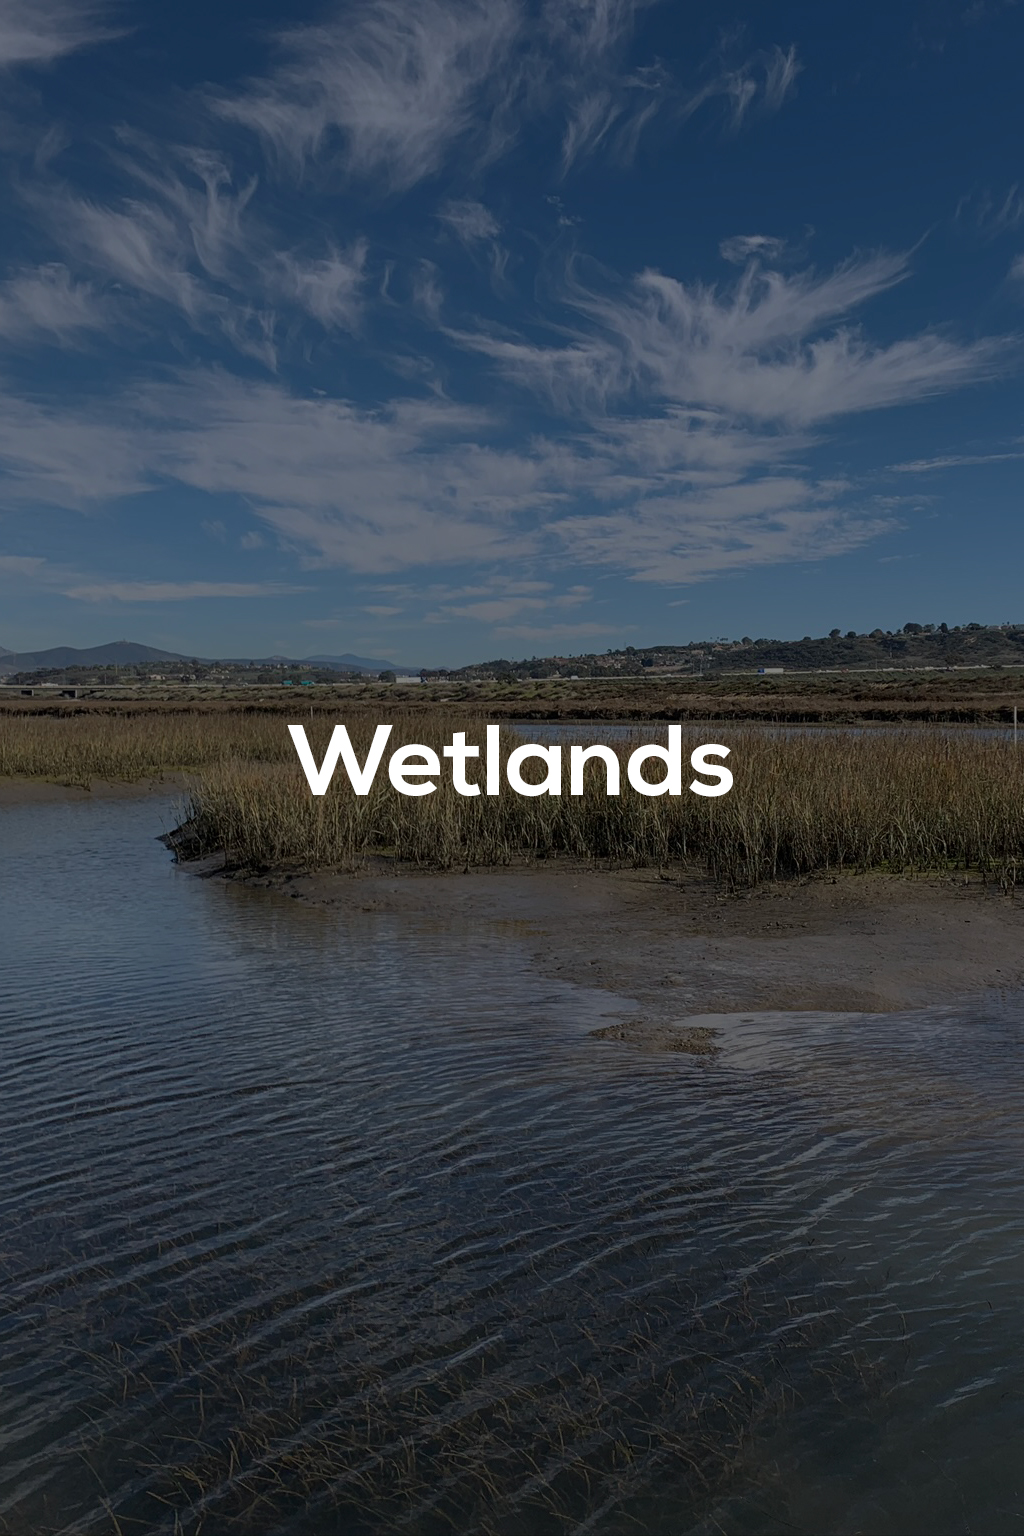 Wetlands – title